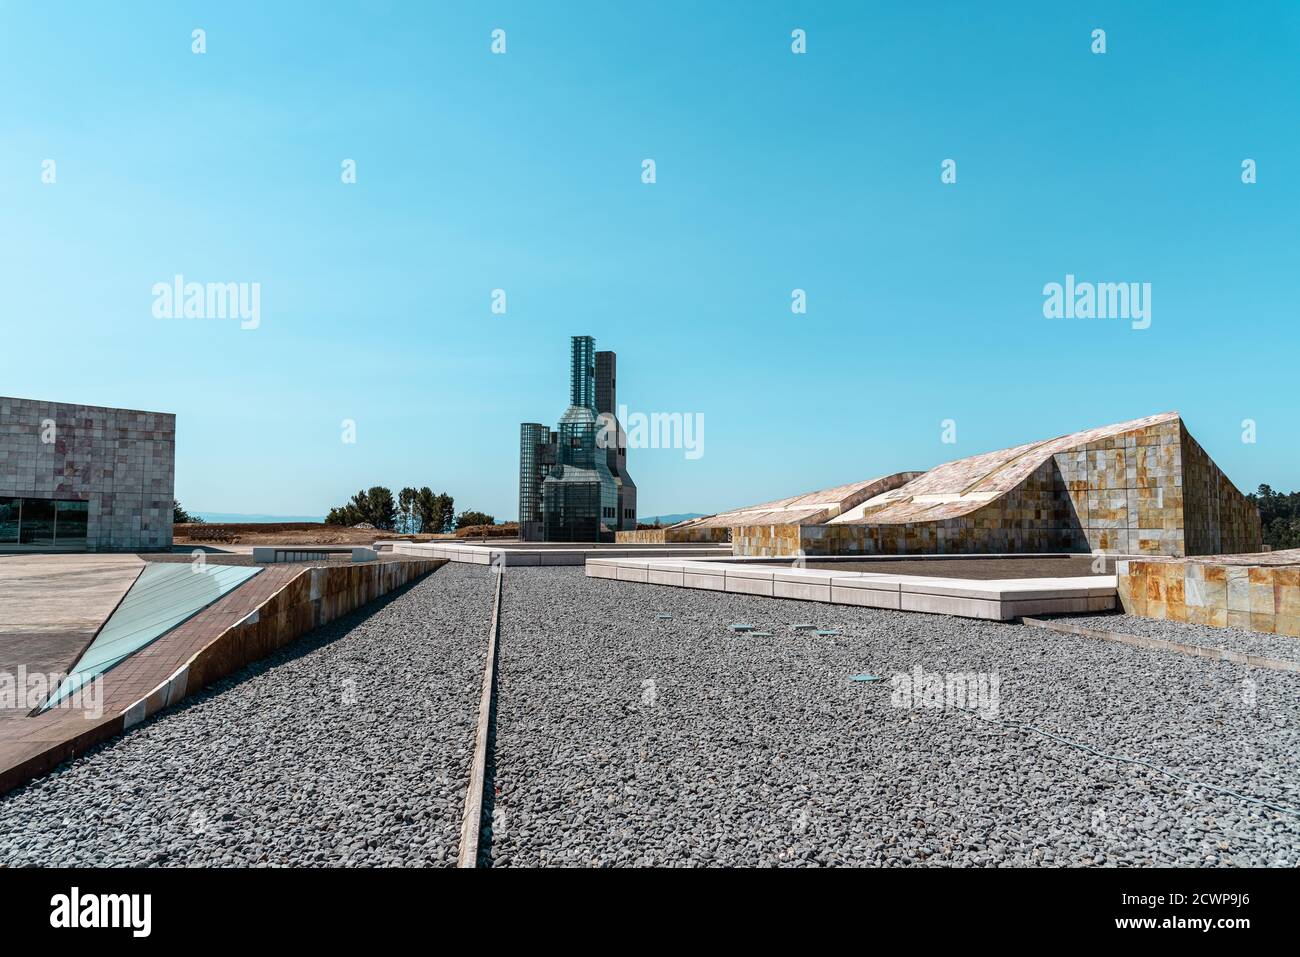 Santiago de Compostela, Spanien - 18. Juli 2020: Blick auf die Stadt der Kultur Galiciens. Gelegen auf dem Gipfel des Berges Gaias als architektonischer Meilenstein. De Stockfoto